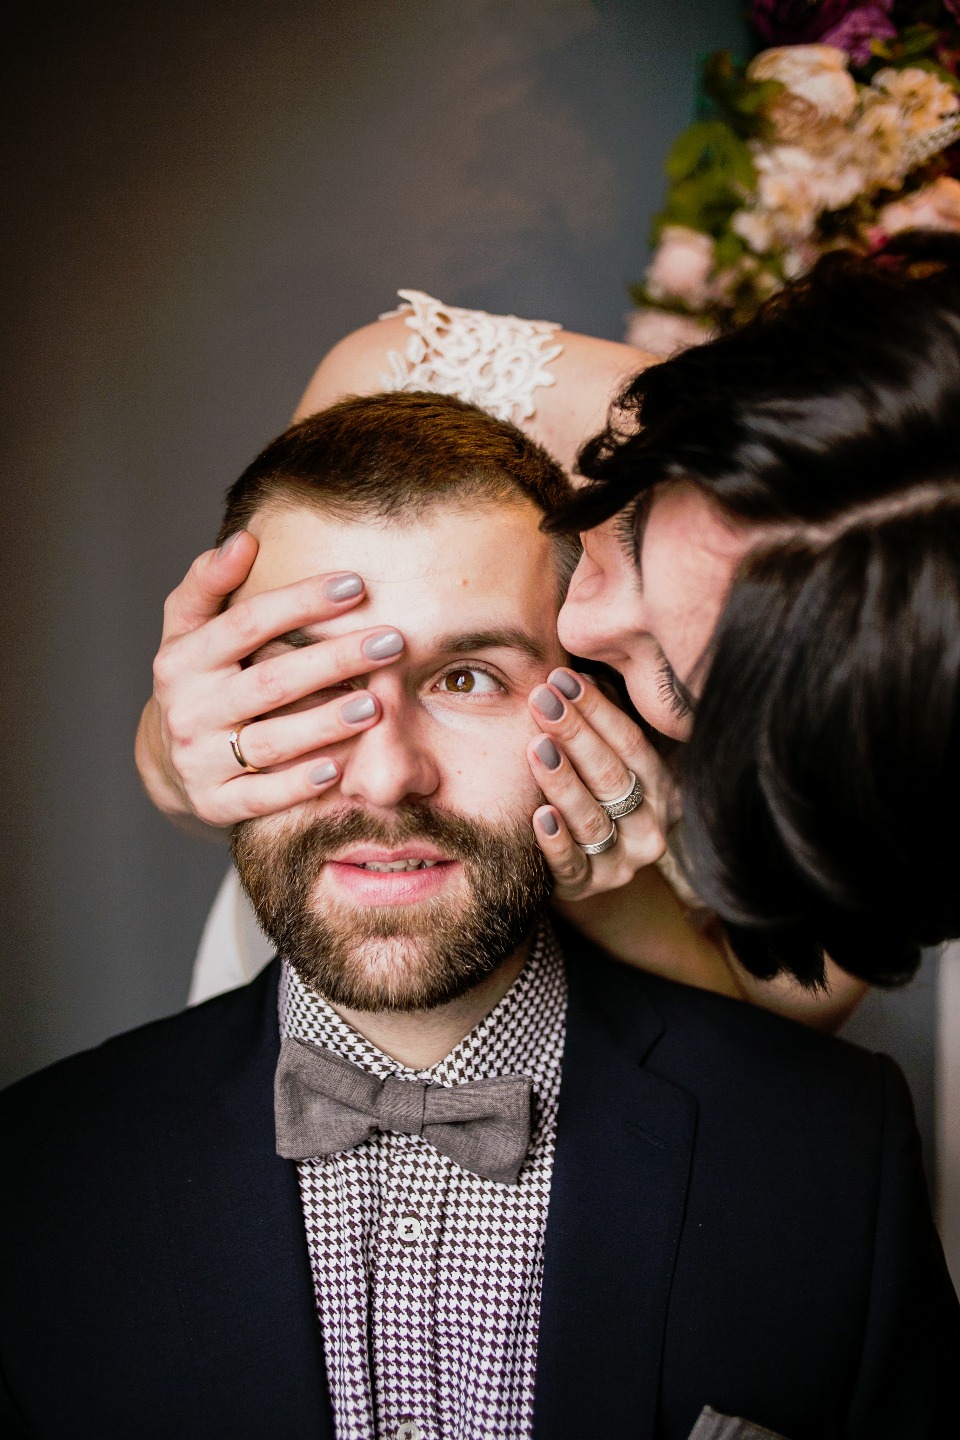 Проект «Лофт-свадьба»: стилизованная фотосессия